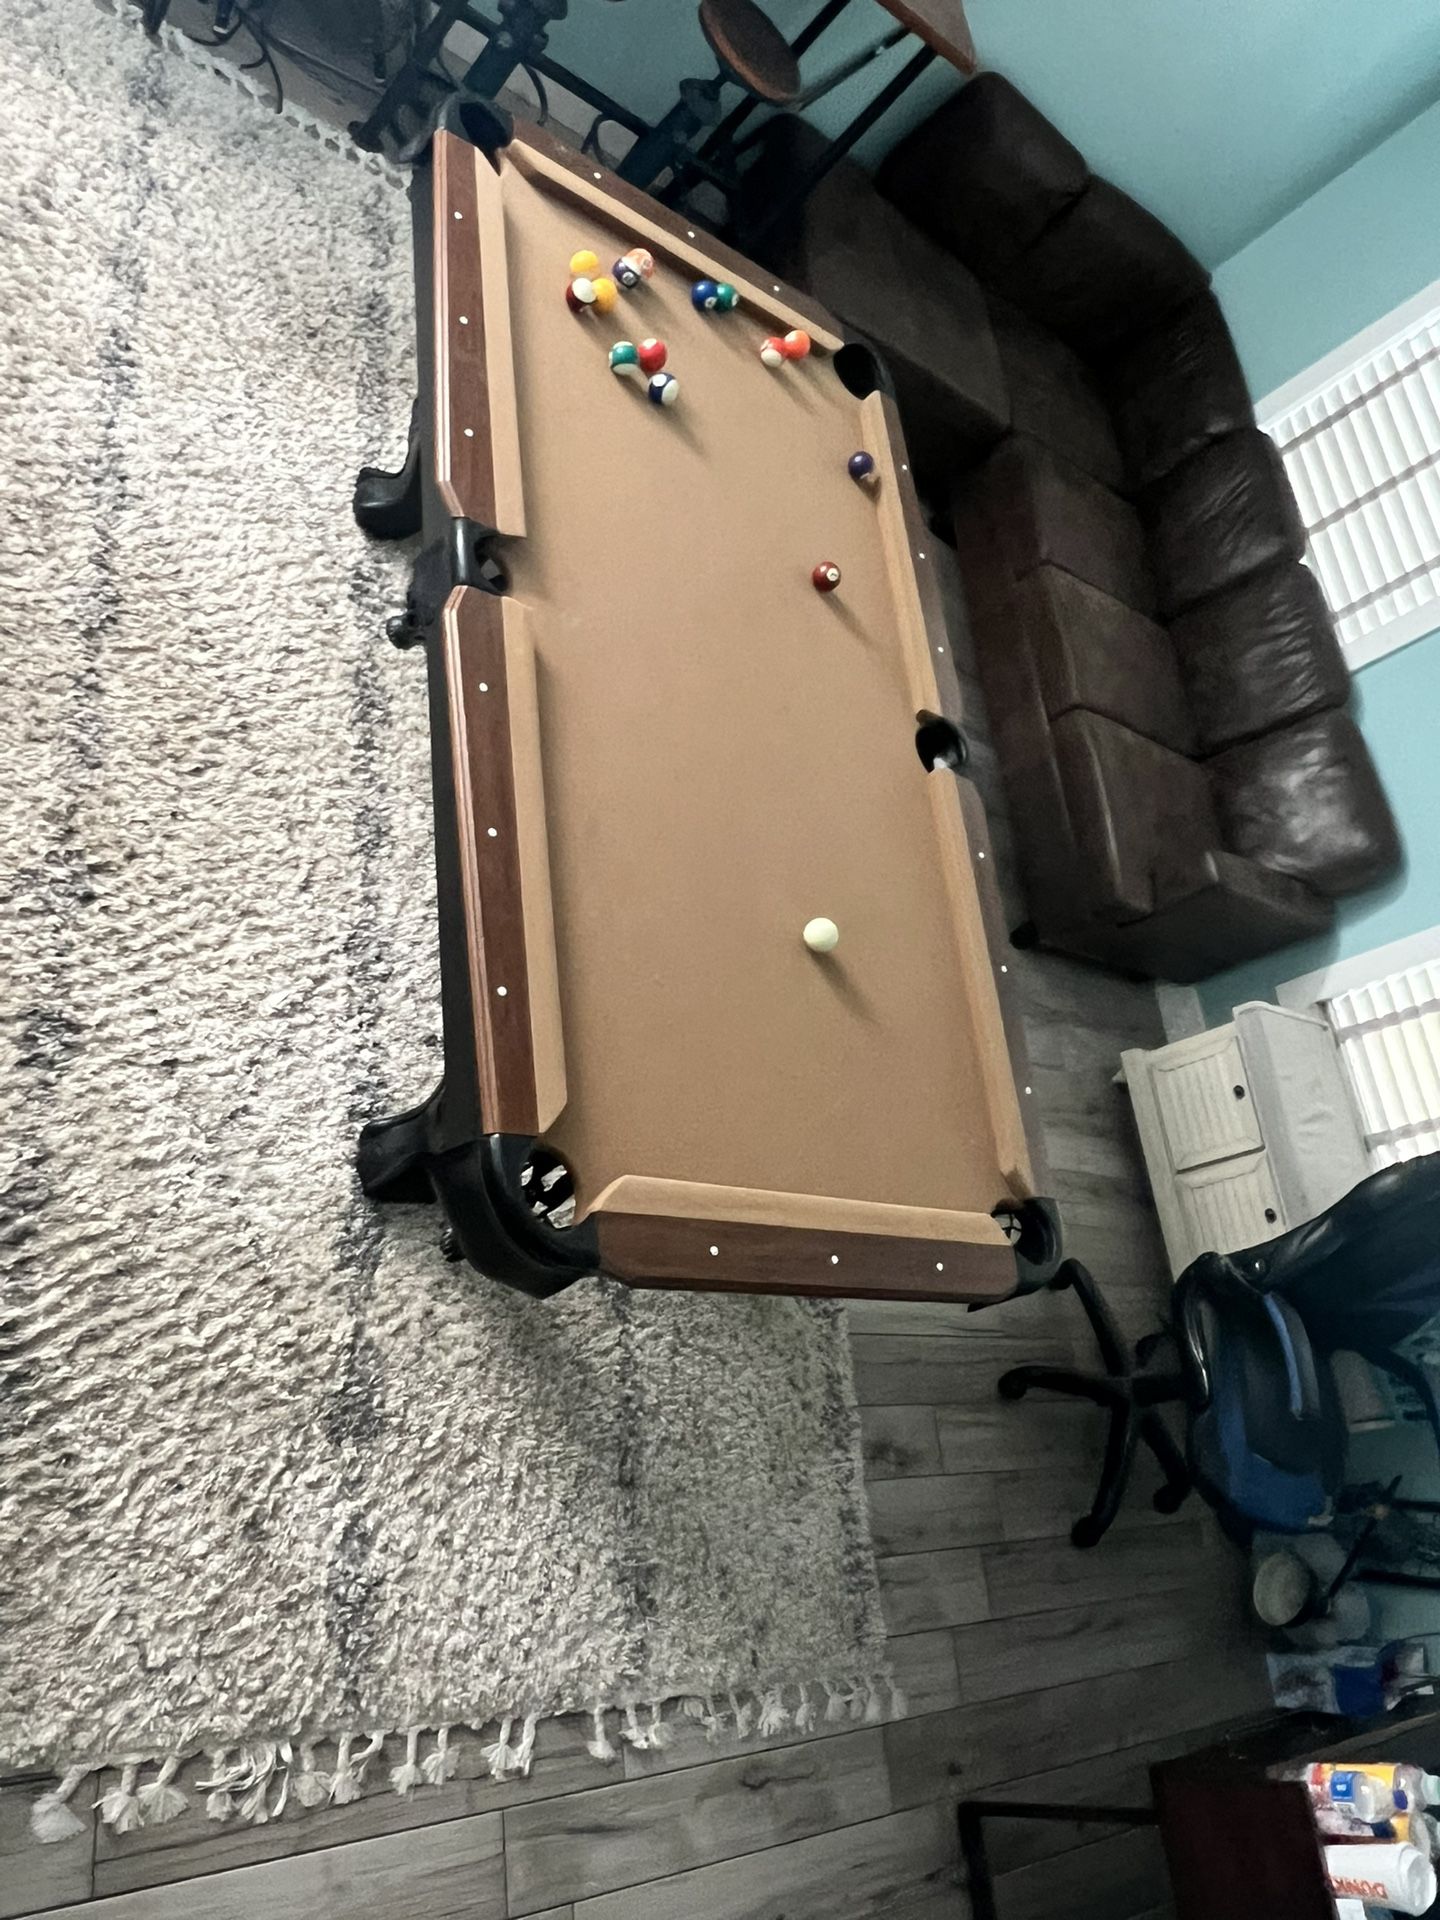 Pool Table & Dart Board